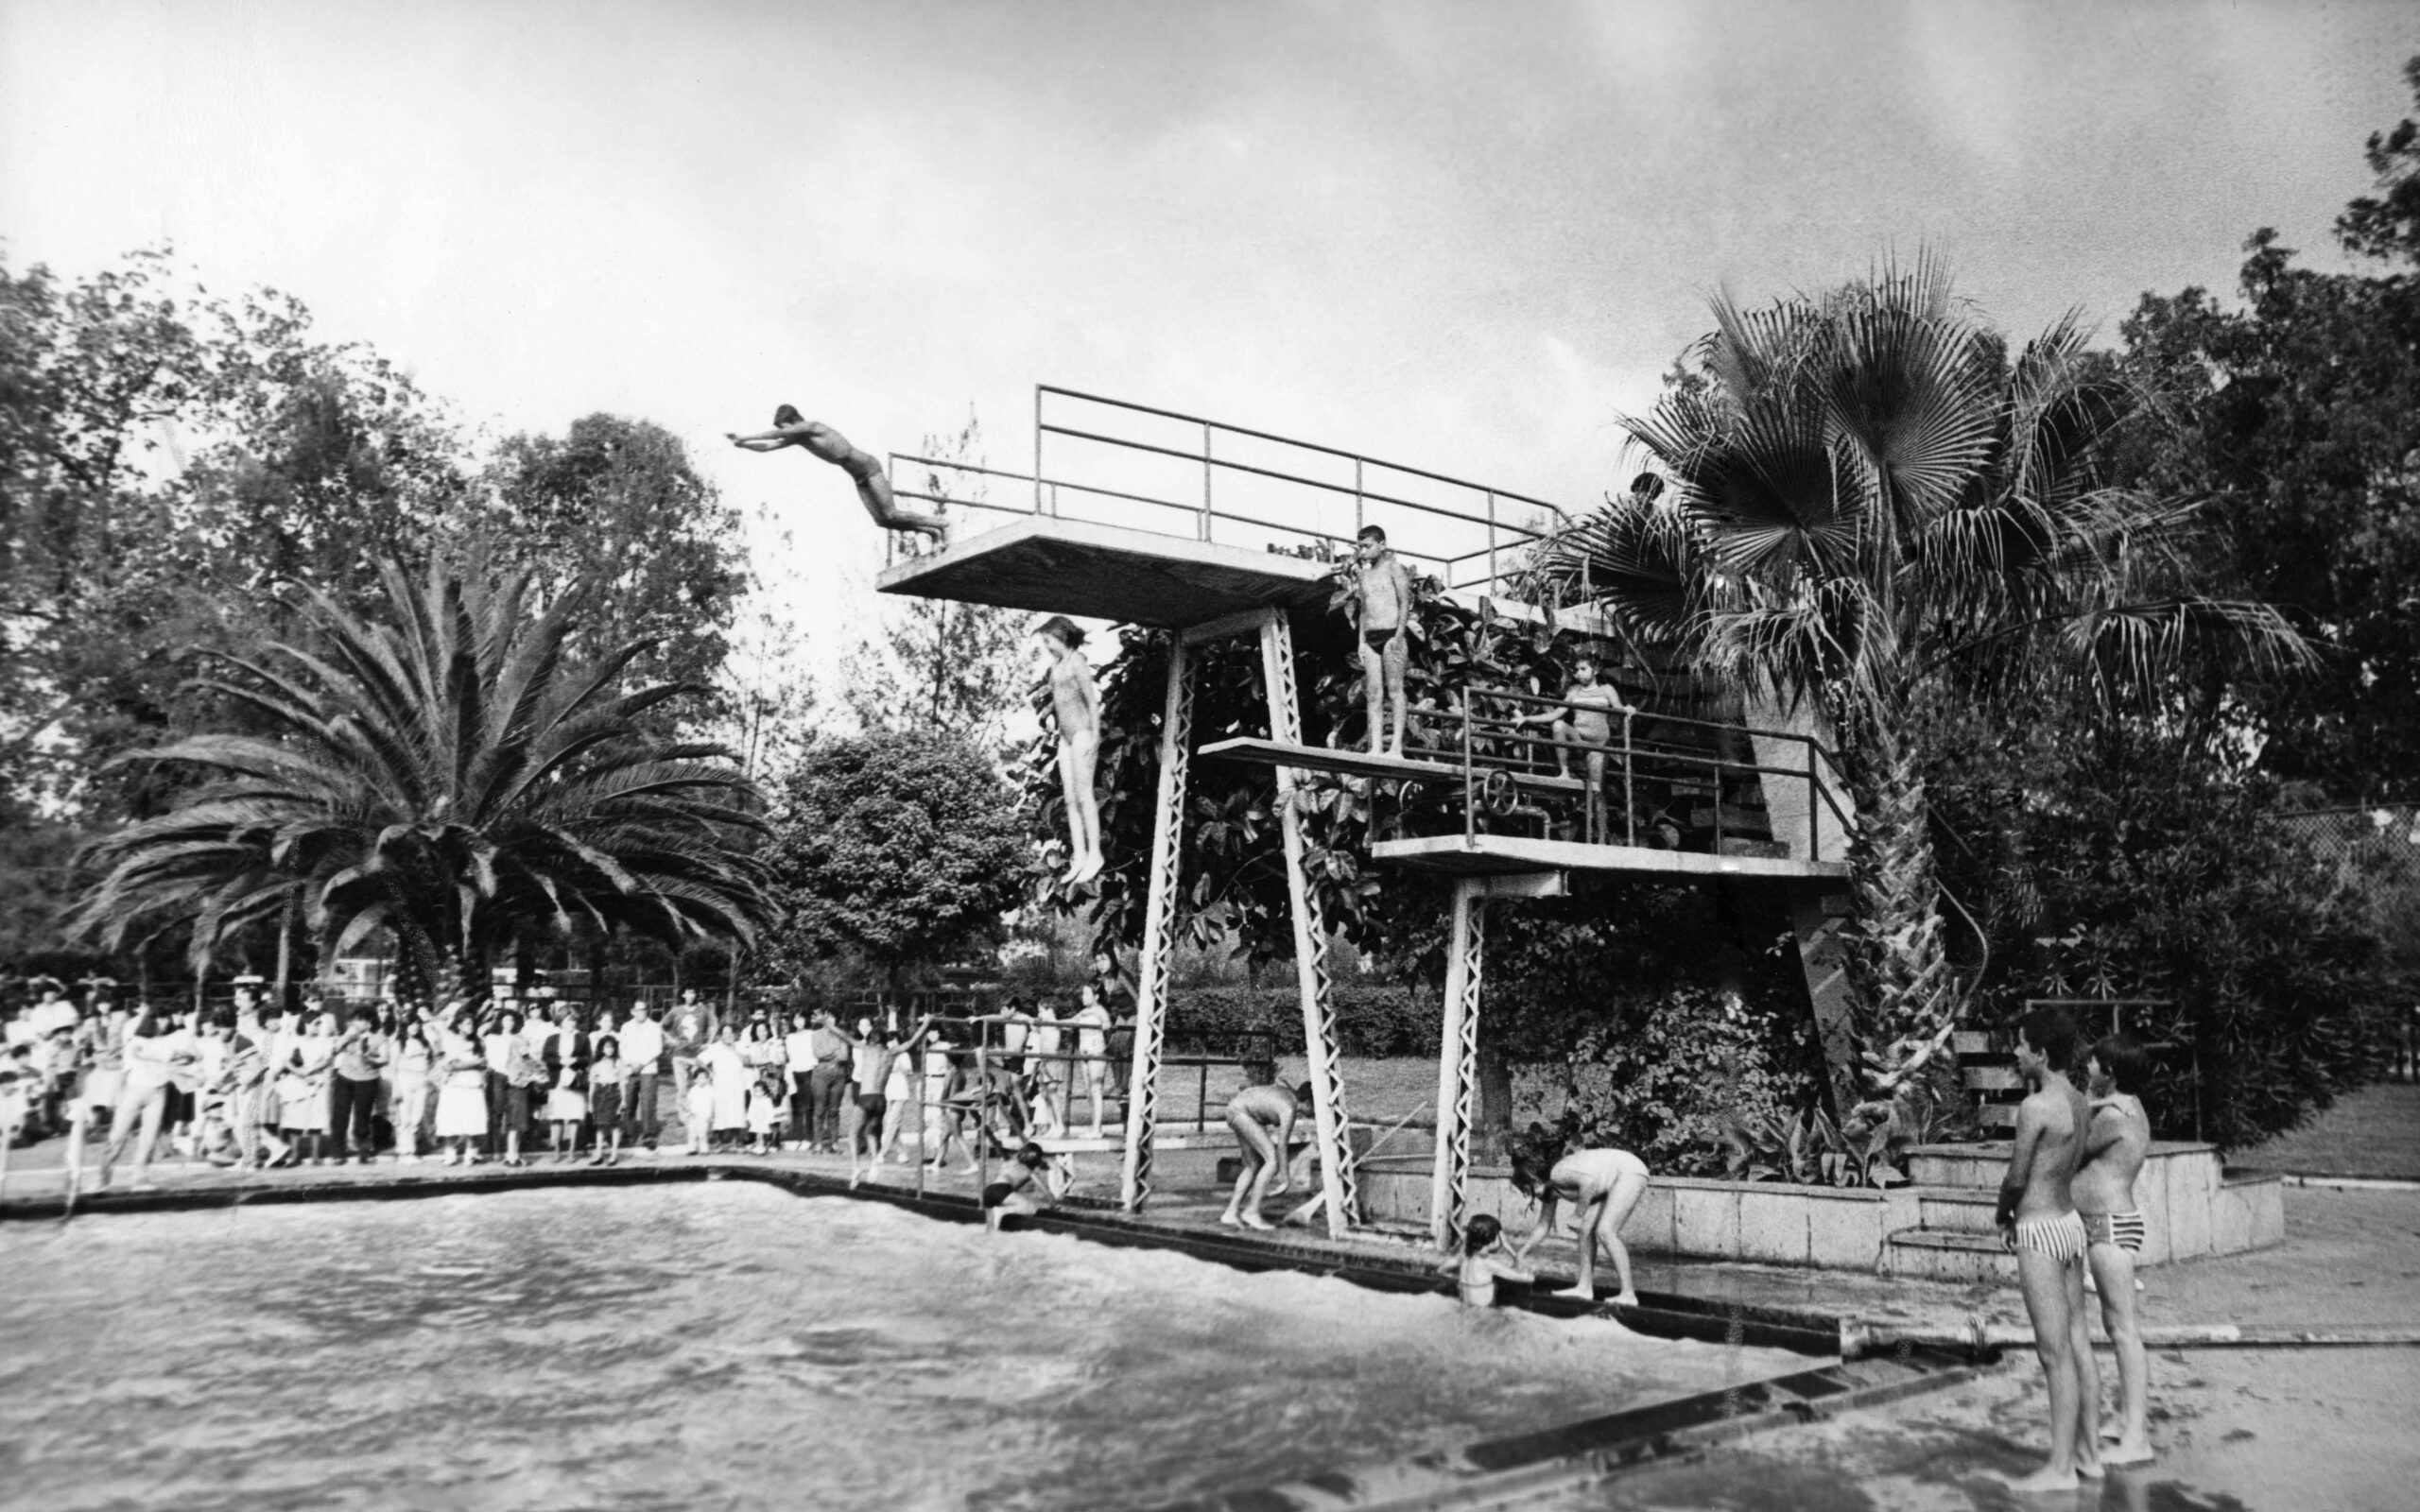 La enseñanza de la natación para competencia y la natación recreativa era muy popular entre las familias ferrocarrileras.